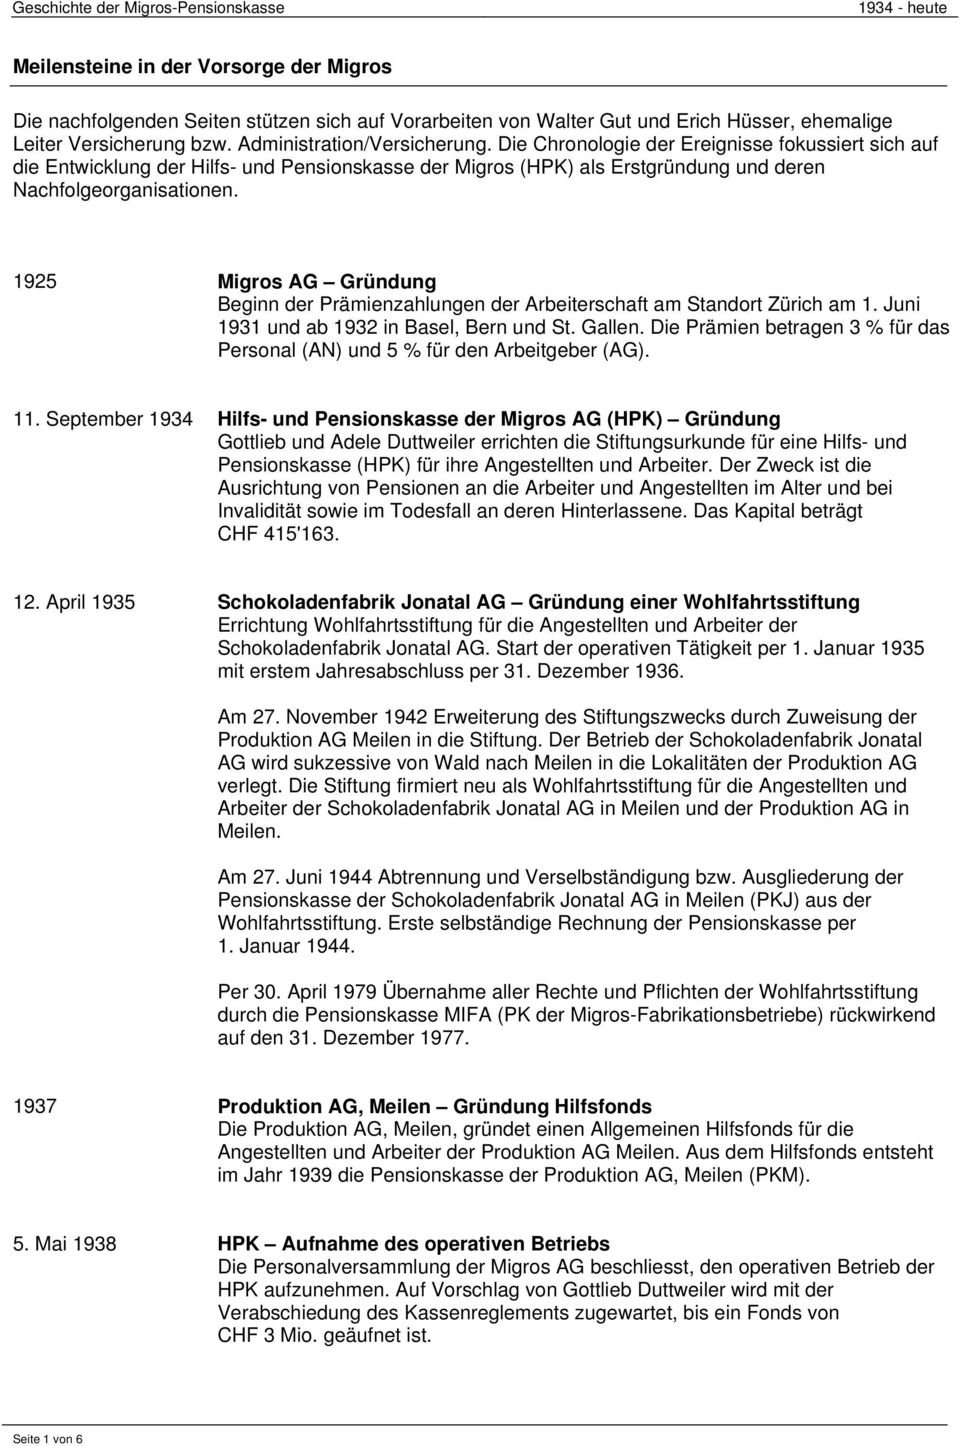 1925 Migros AG Gründung Beginn der Prämienzahlungen der Arbeiterschaft am Standort Zürich am 1. Juni 1931 und ab 1932 in Basel, Bern und St. Gallen.